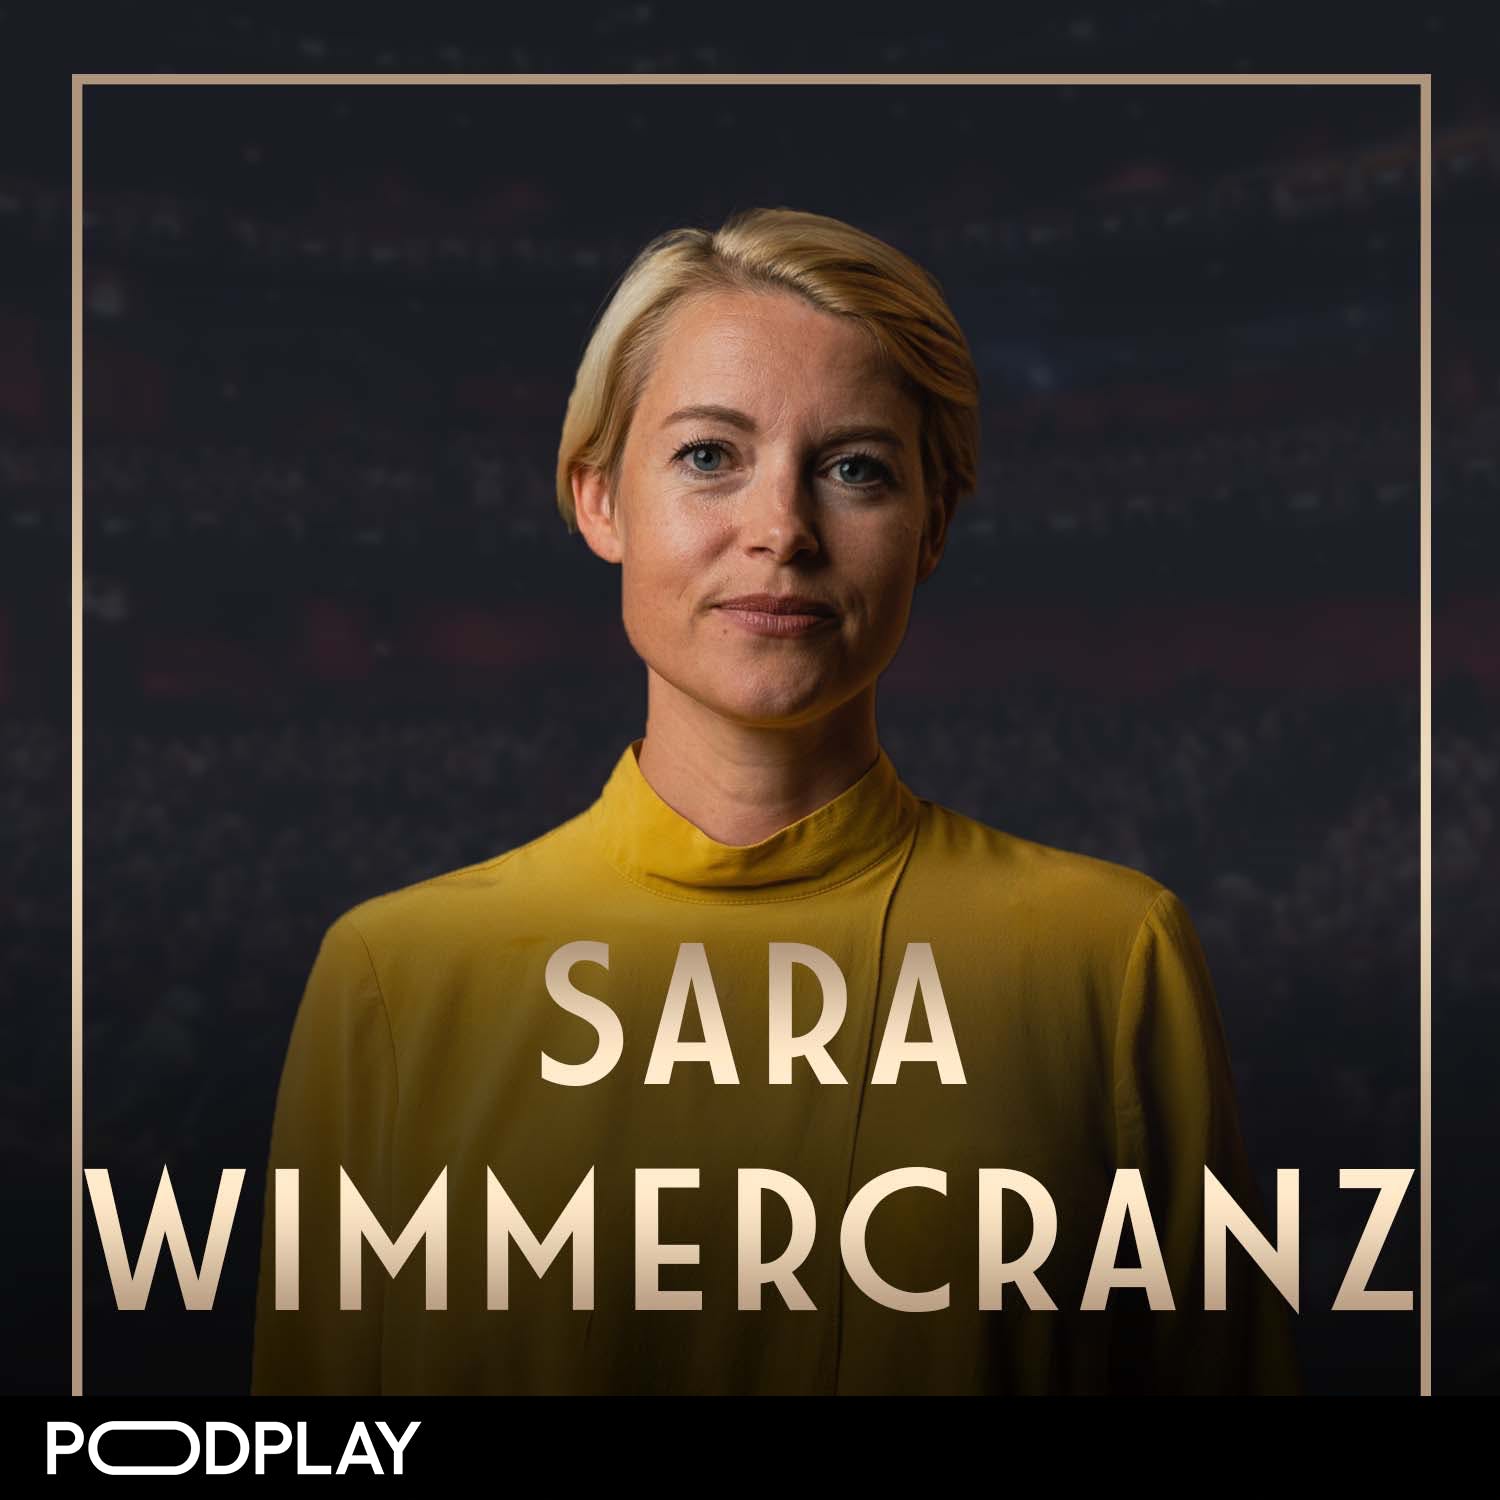 537. Sara Wimmercranz - Så håller du den perfekta pitchen & skapar lojala kunder, Original